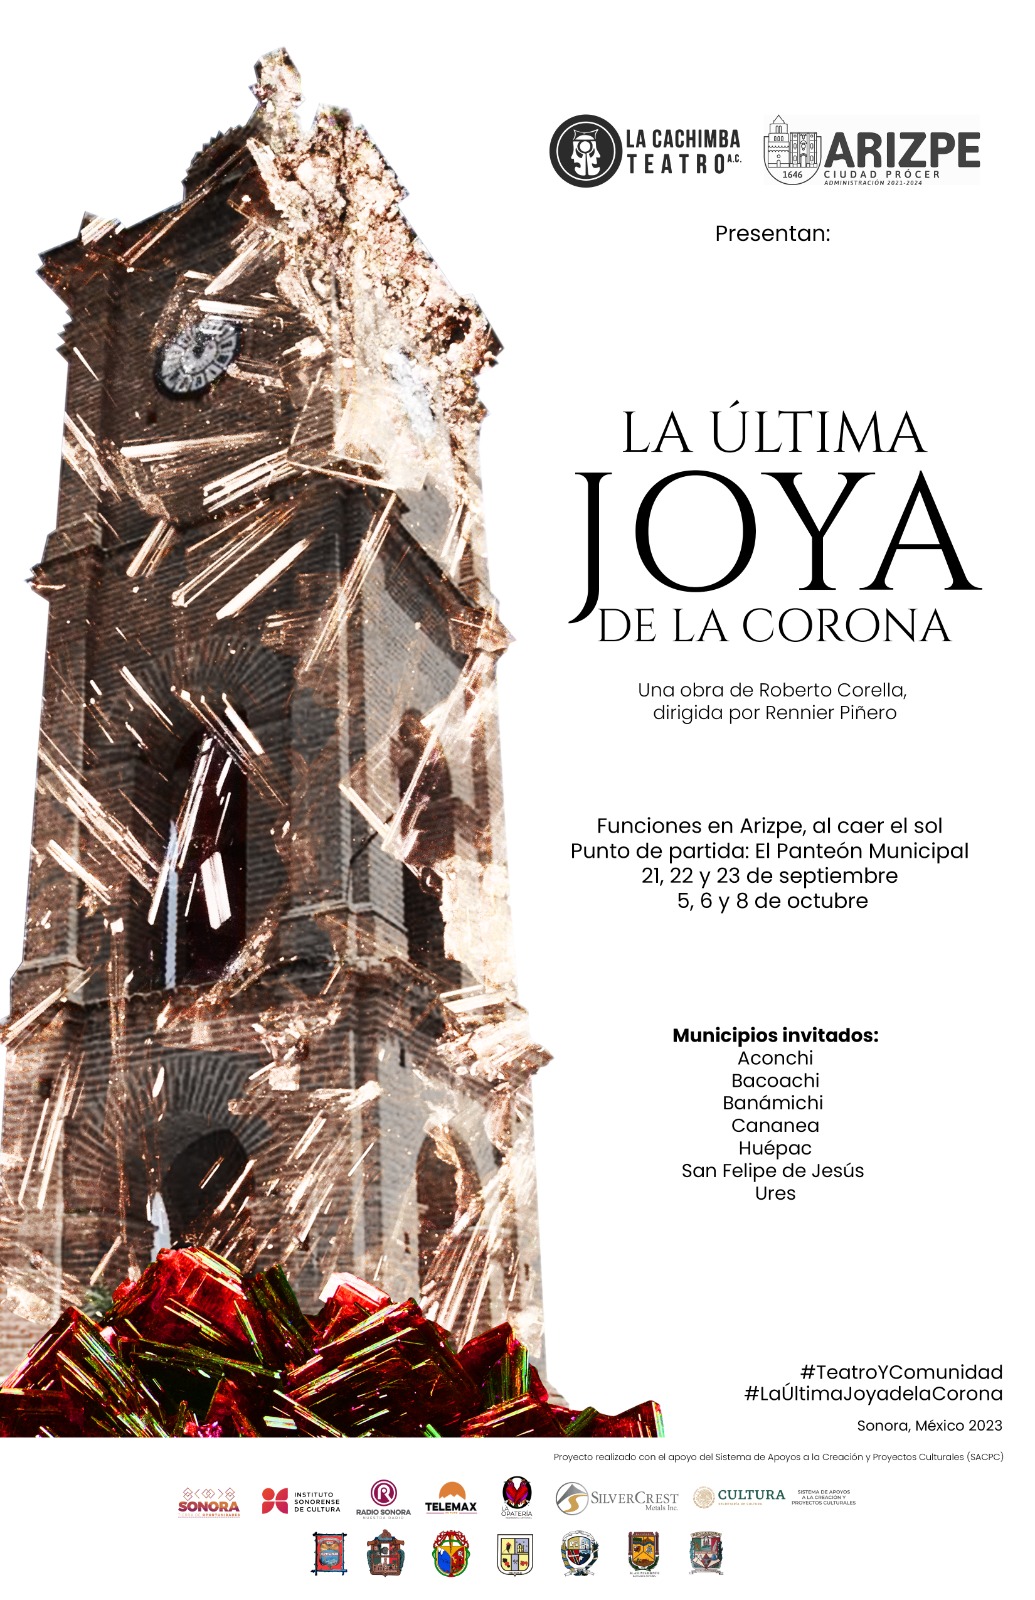 Estrenará “La Cachimba” obra en Arizpe